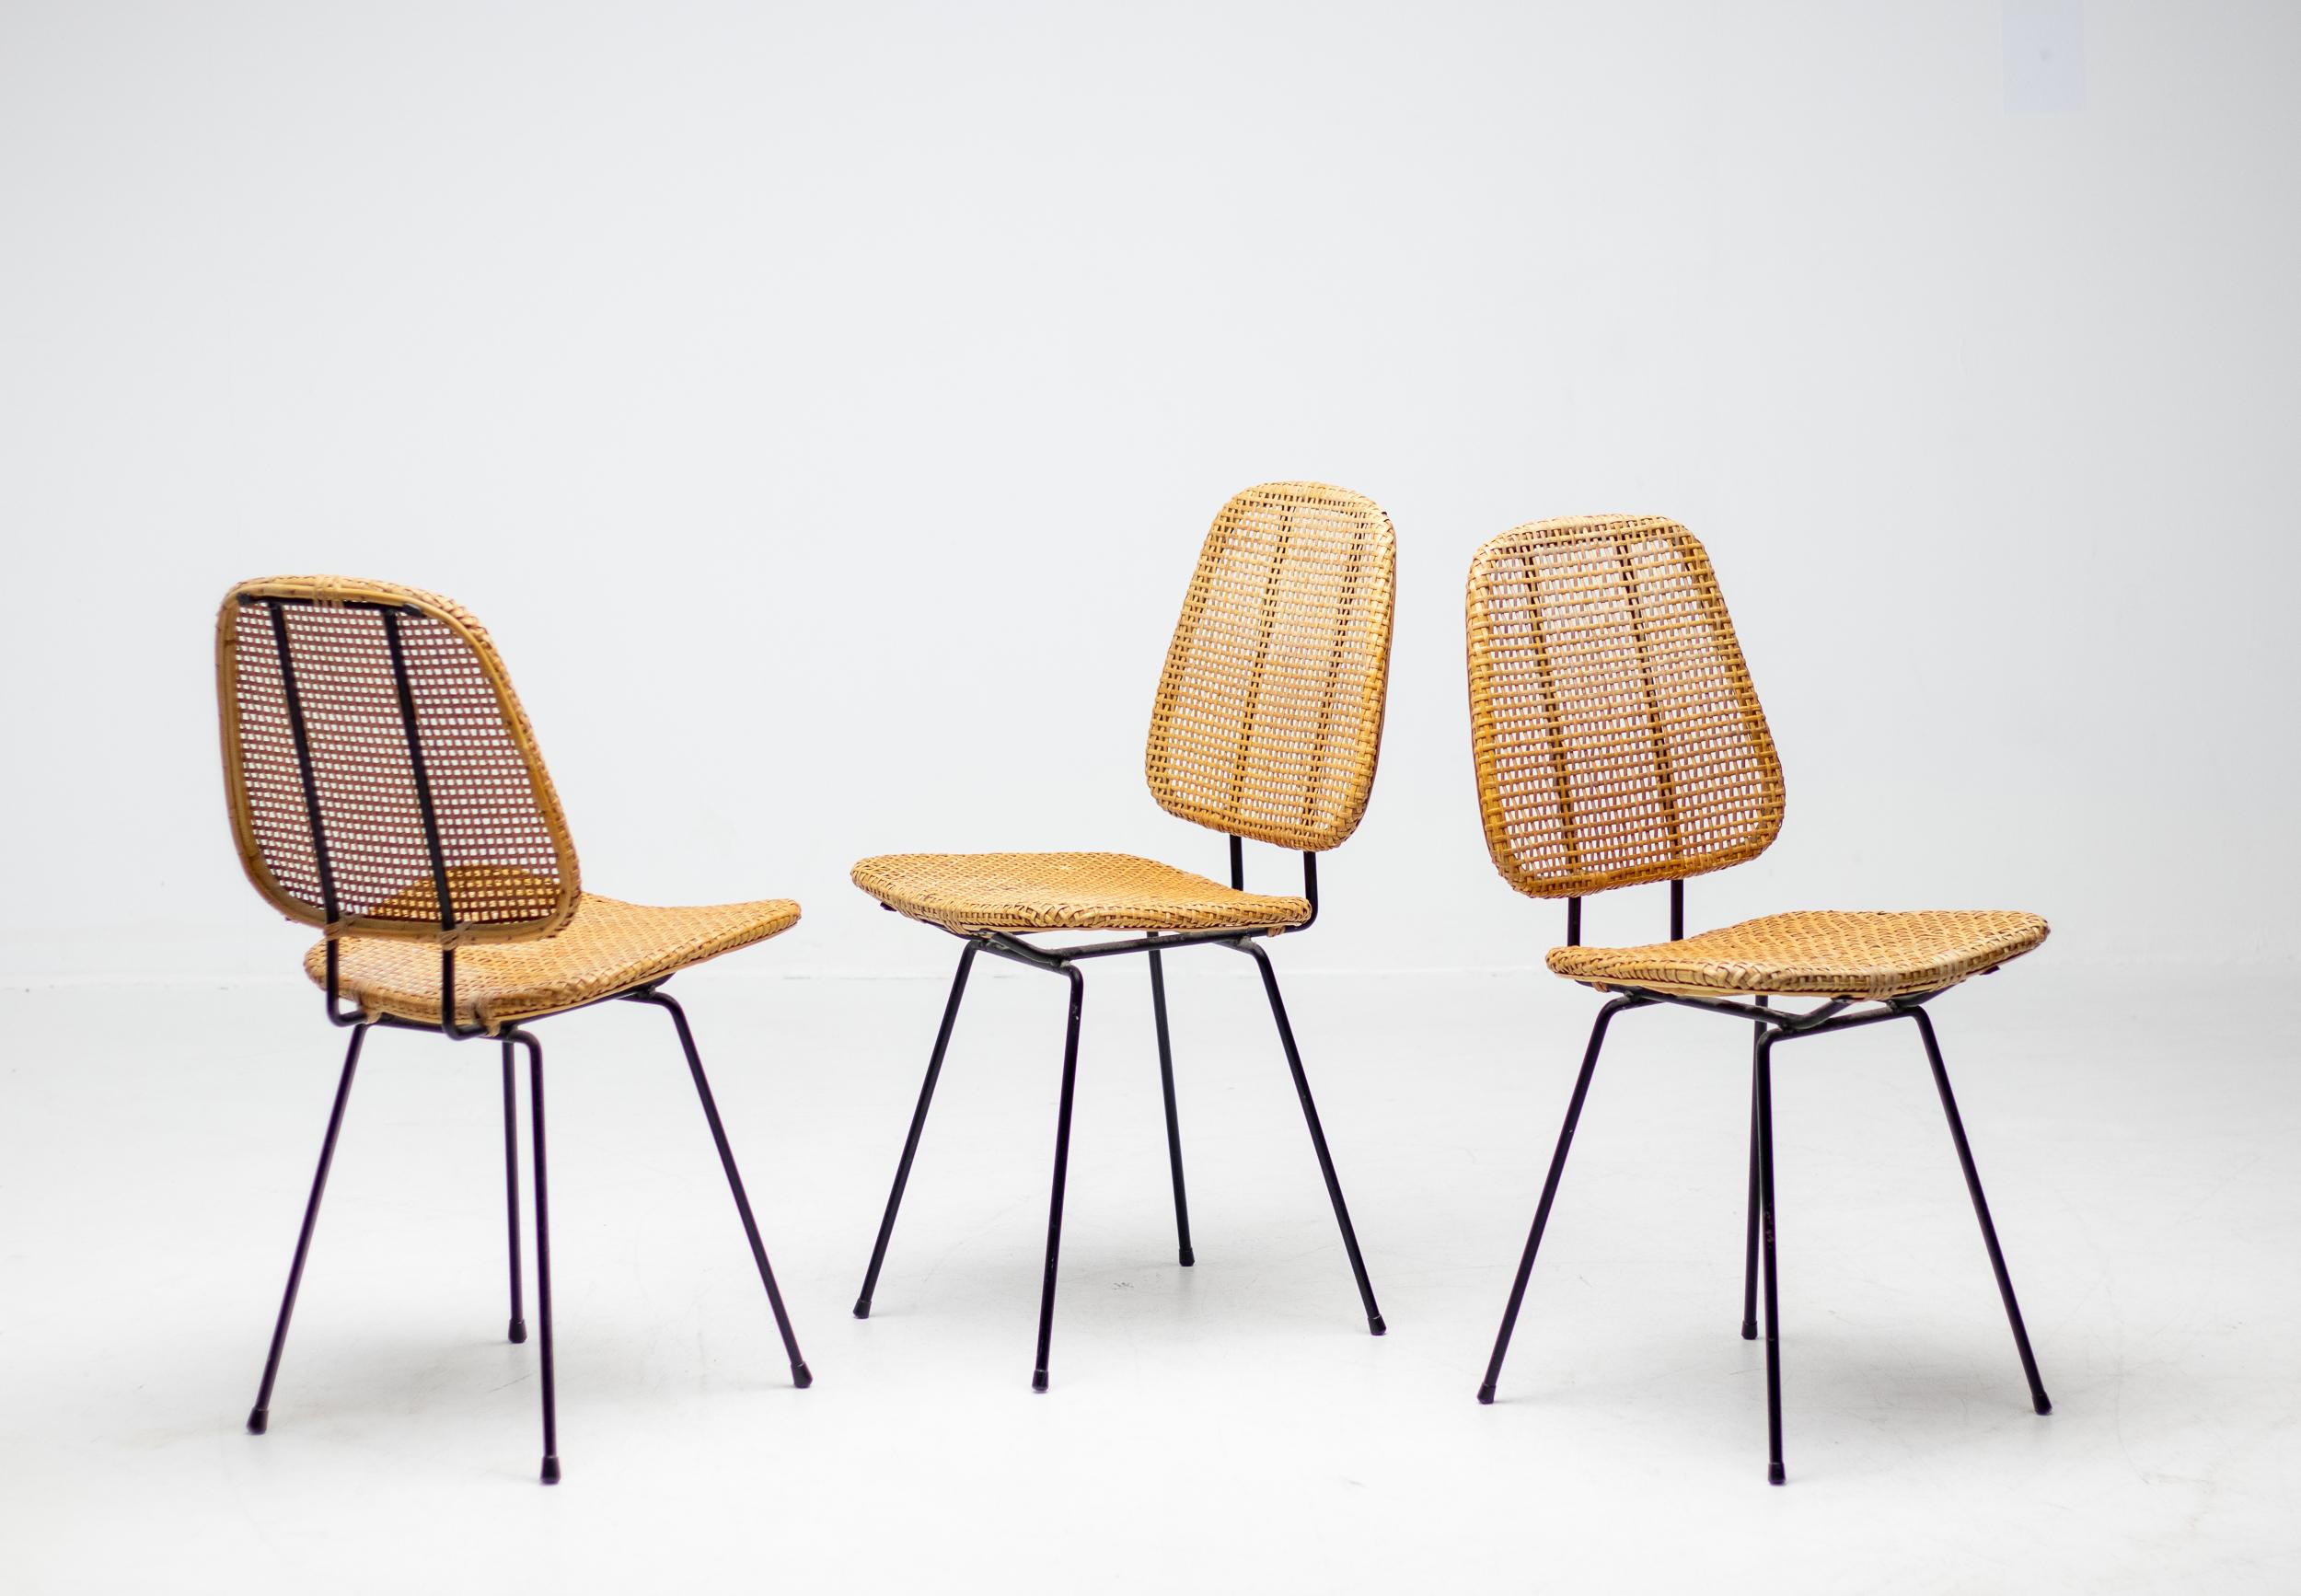 Gracieuse chaise d'appoint italienne des années 1950 en tige d'acier massif émaillé noir et rotin.
Trois chaises disponibles, vendues à l'unité.